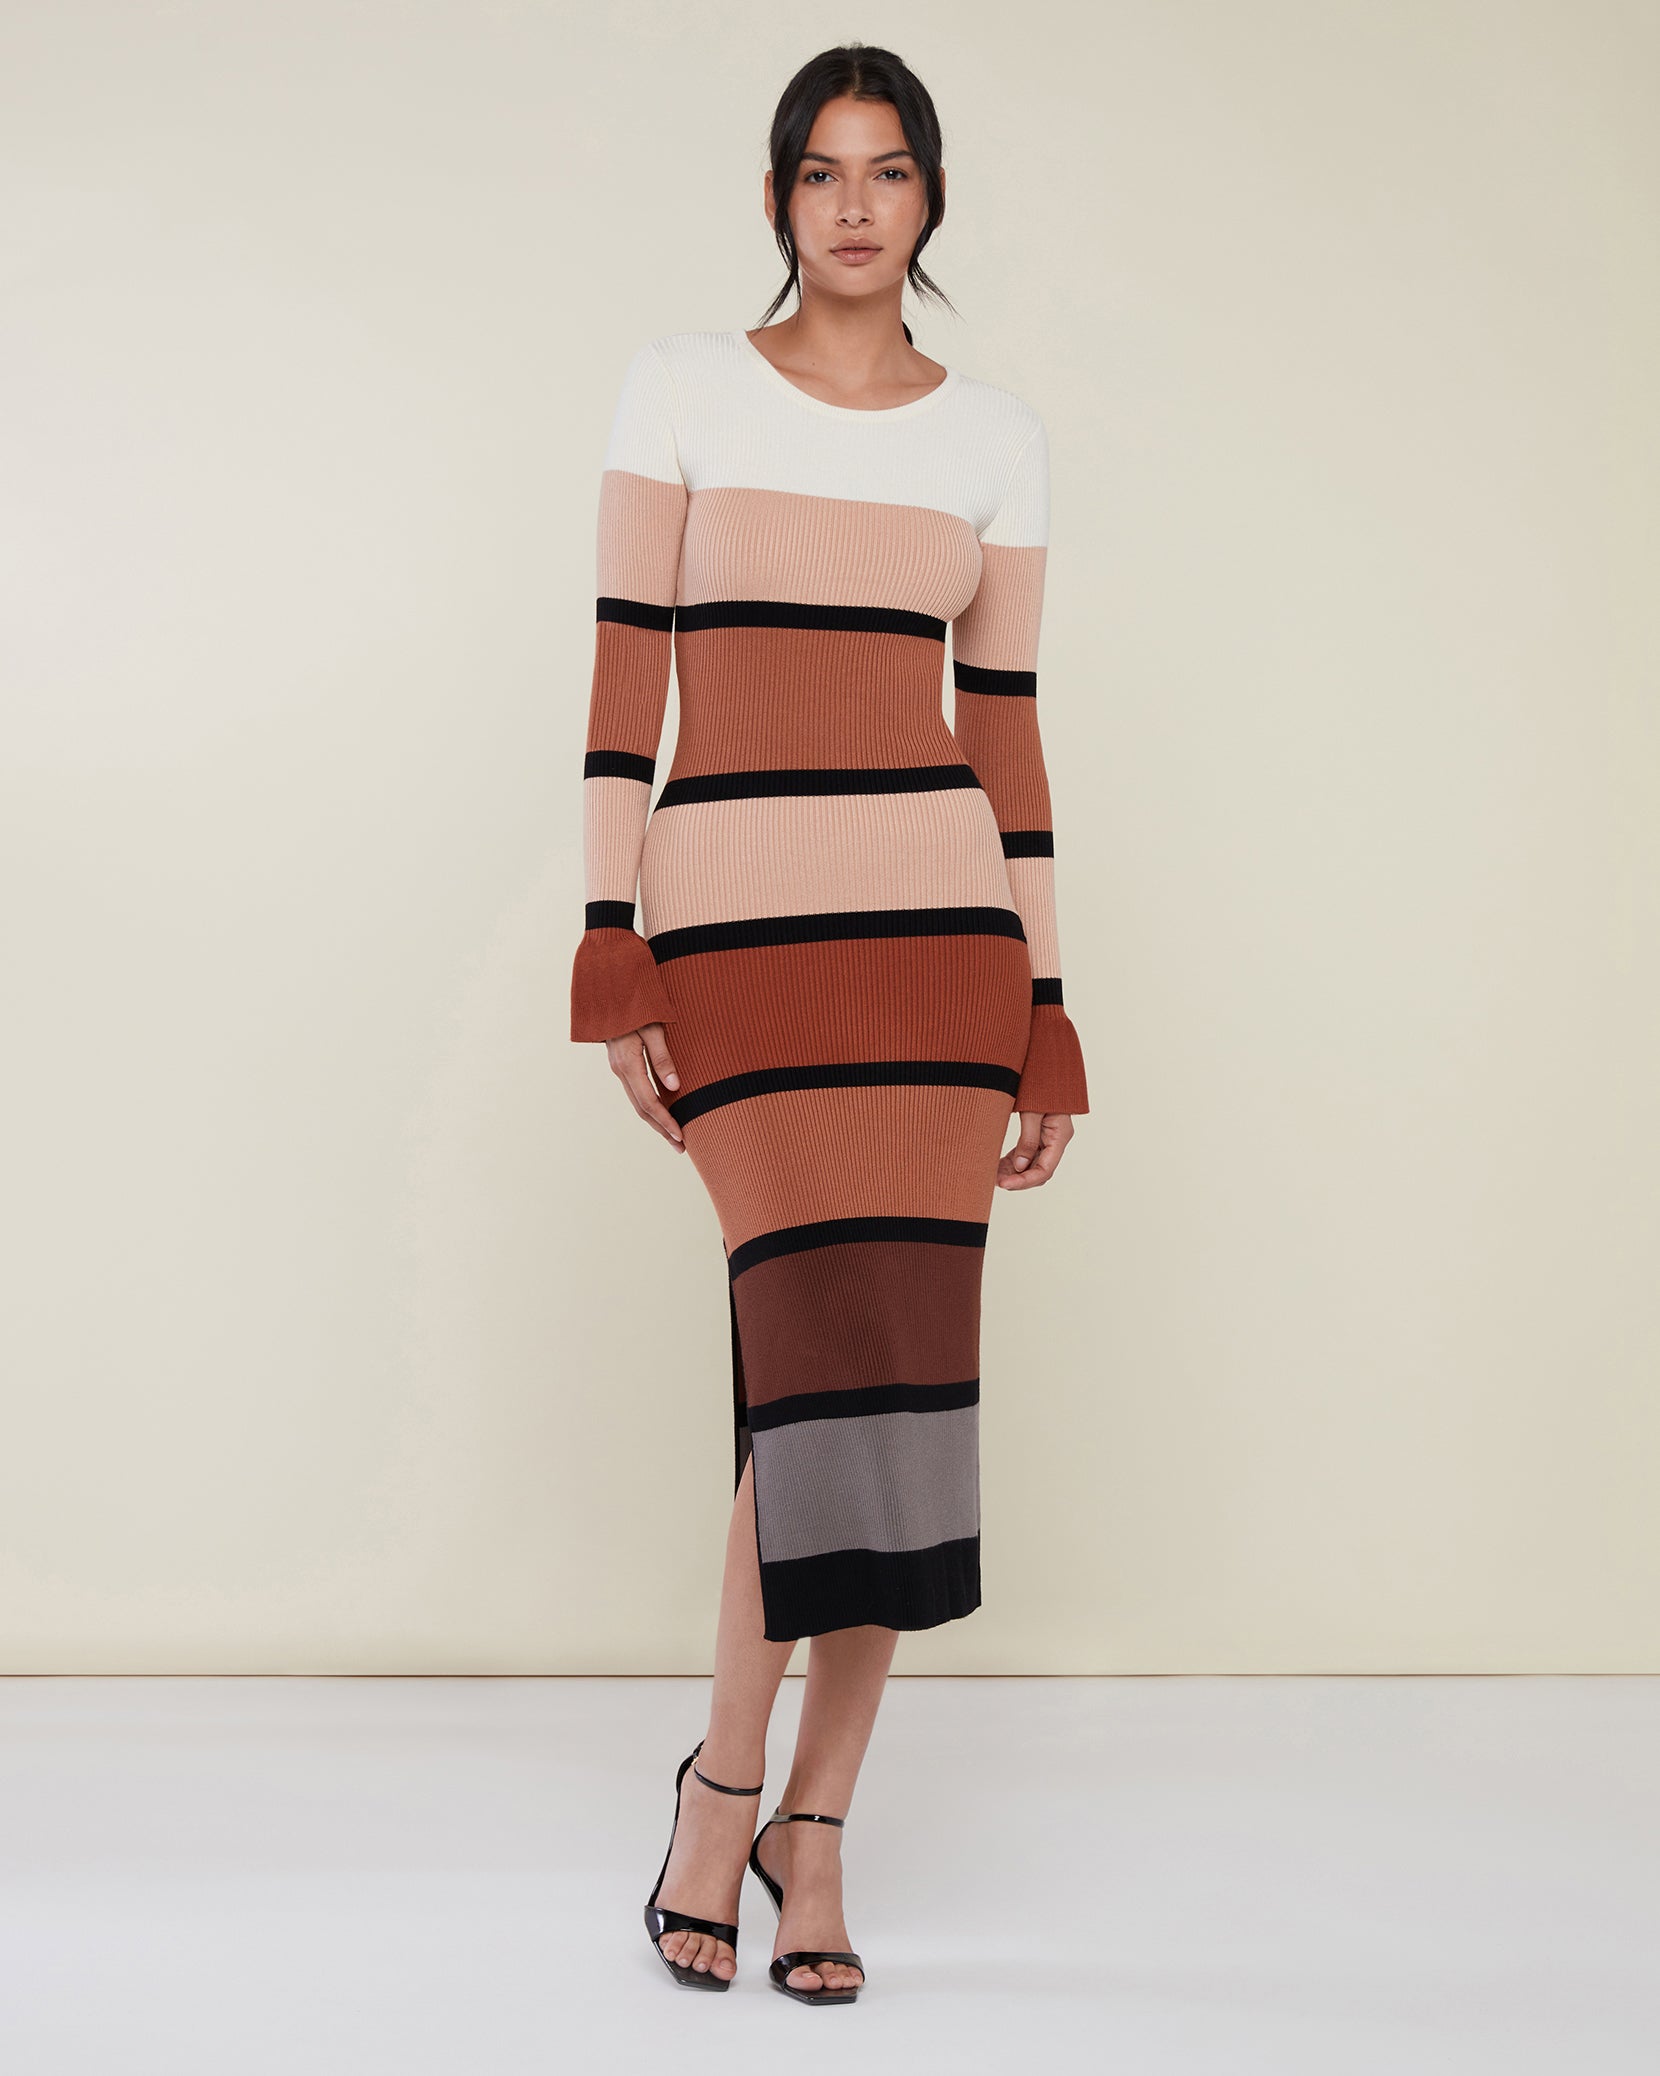 Colorblock Knit Midi Dress – Rachel Parcell, Inc.